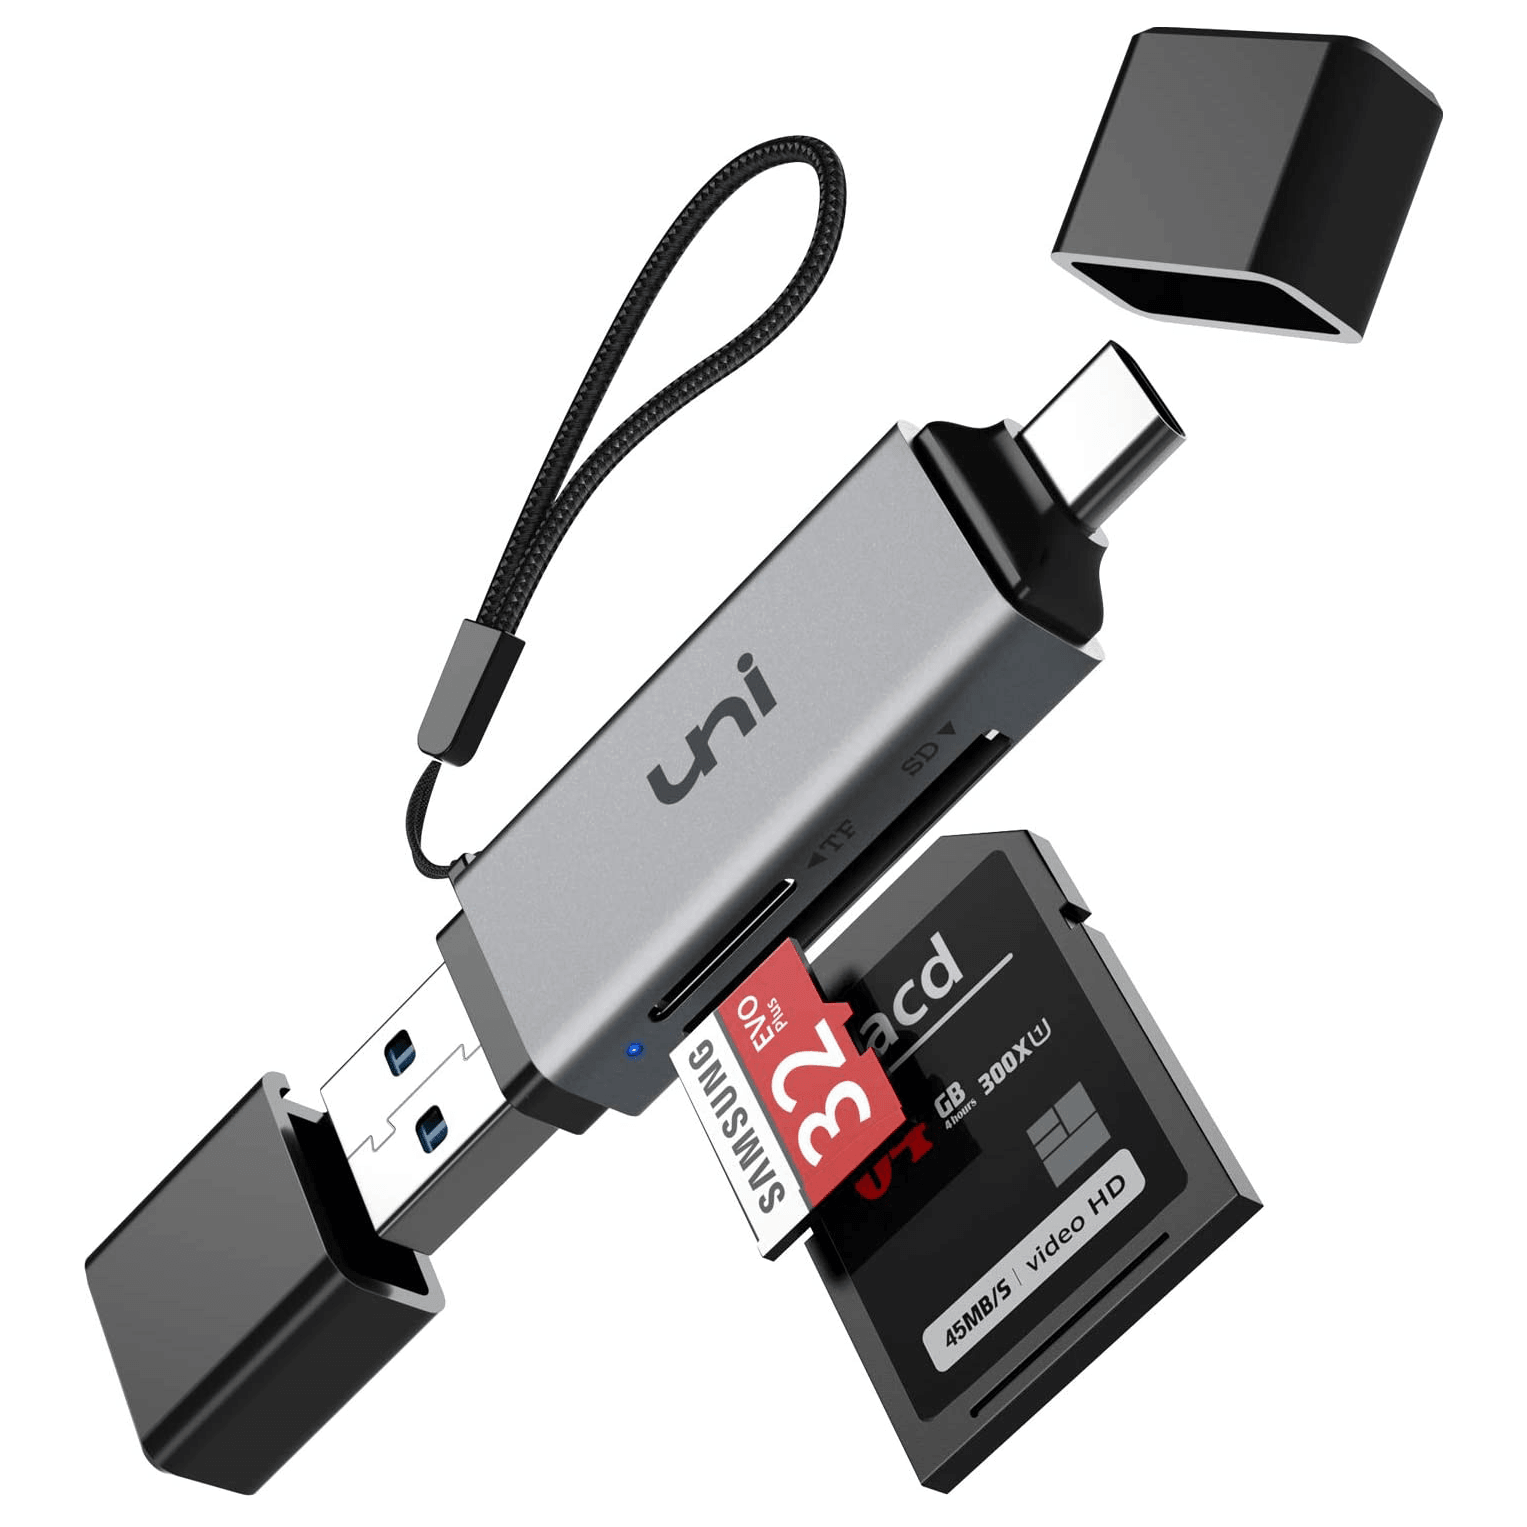 Hub USB C, adaptador HDMI 5 en 1 USB C 4K a 32Hz con puerto Ethernet,  puerto de carga PD tipo C de 100 W, puerto de carga USB 3.0 y 2.0  compatible con